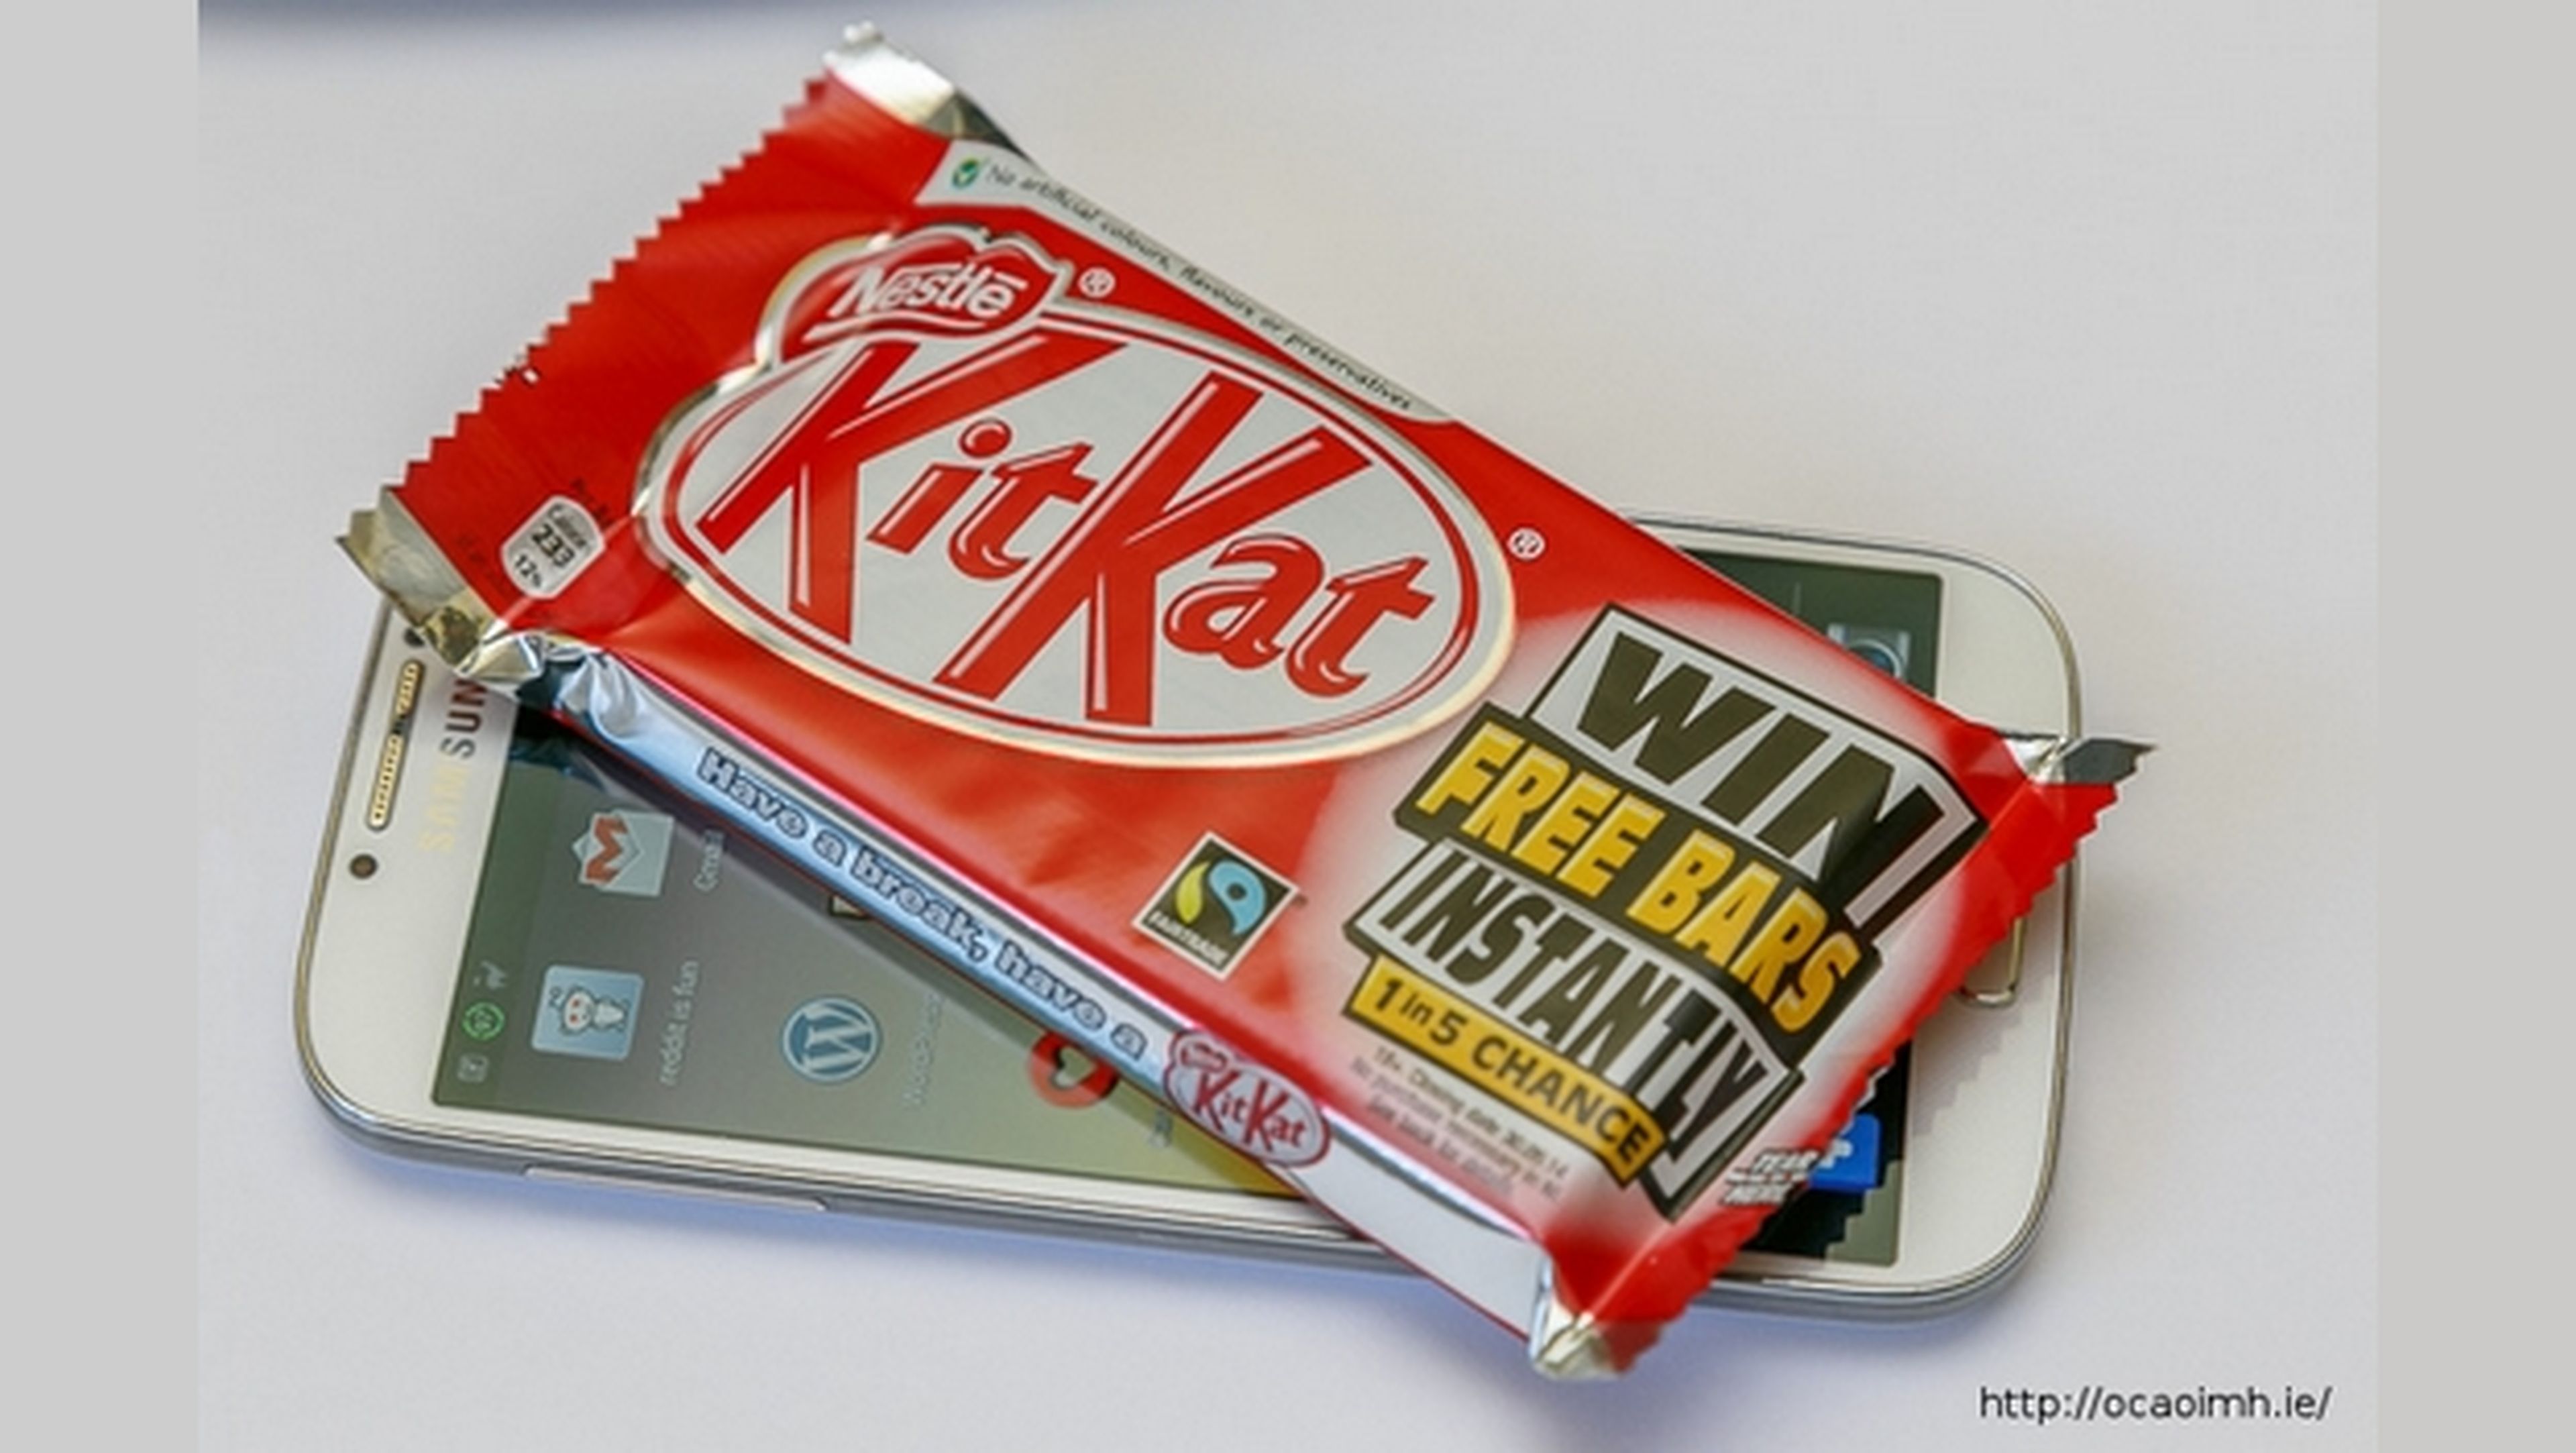 Lista de smartphones y tablets de Samsung con actualización Android 4.4 KitKat en Europa